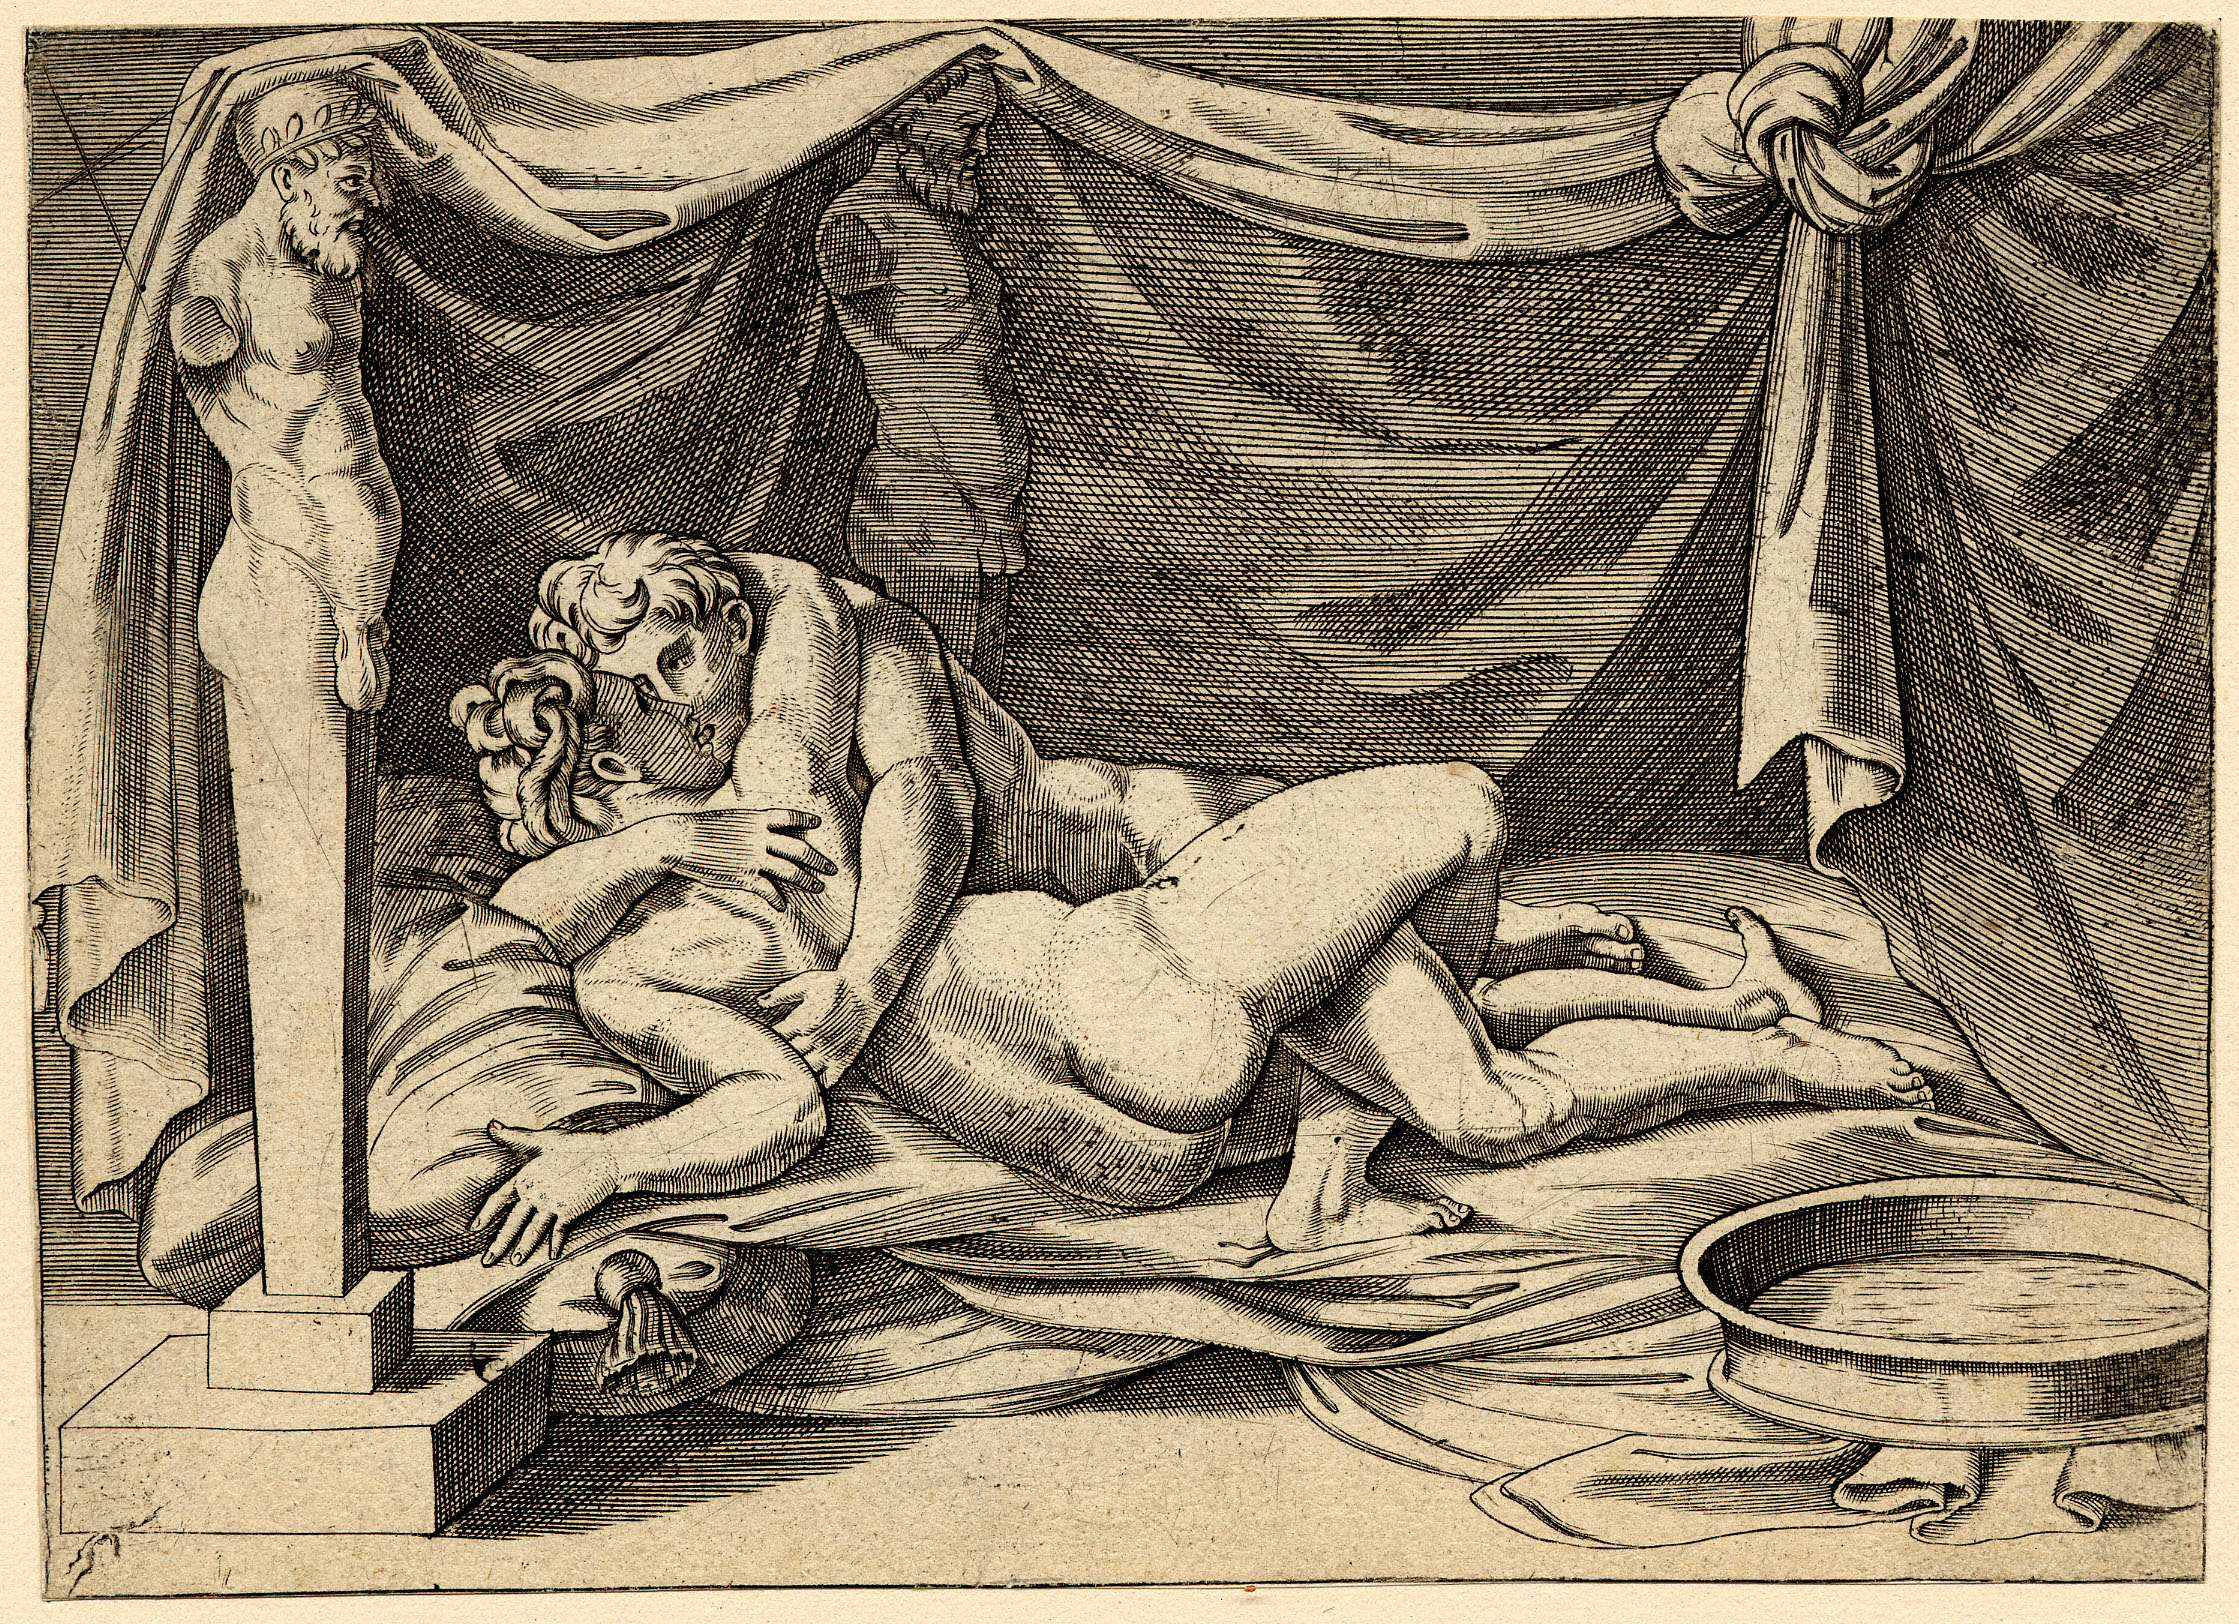 Mythology Erotica - I Modi - Wikipedia